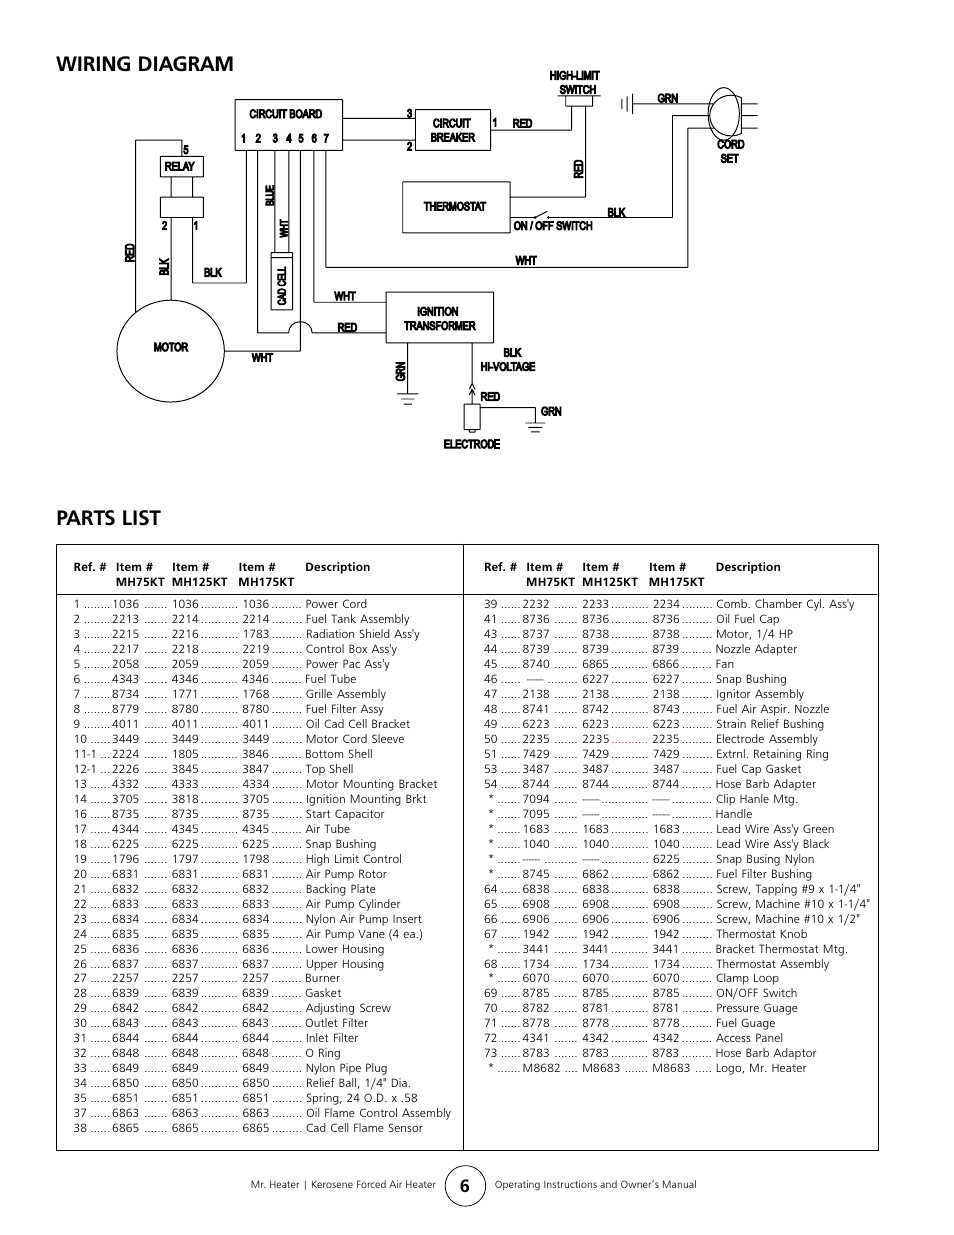 31 Mr Heater Parts Diagram